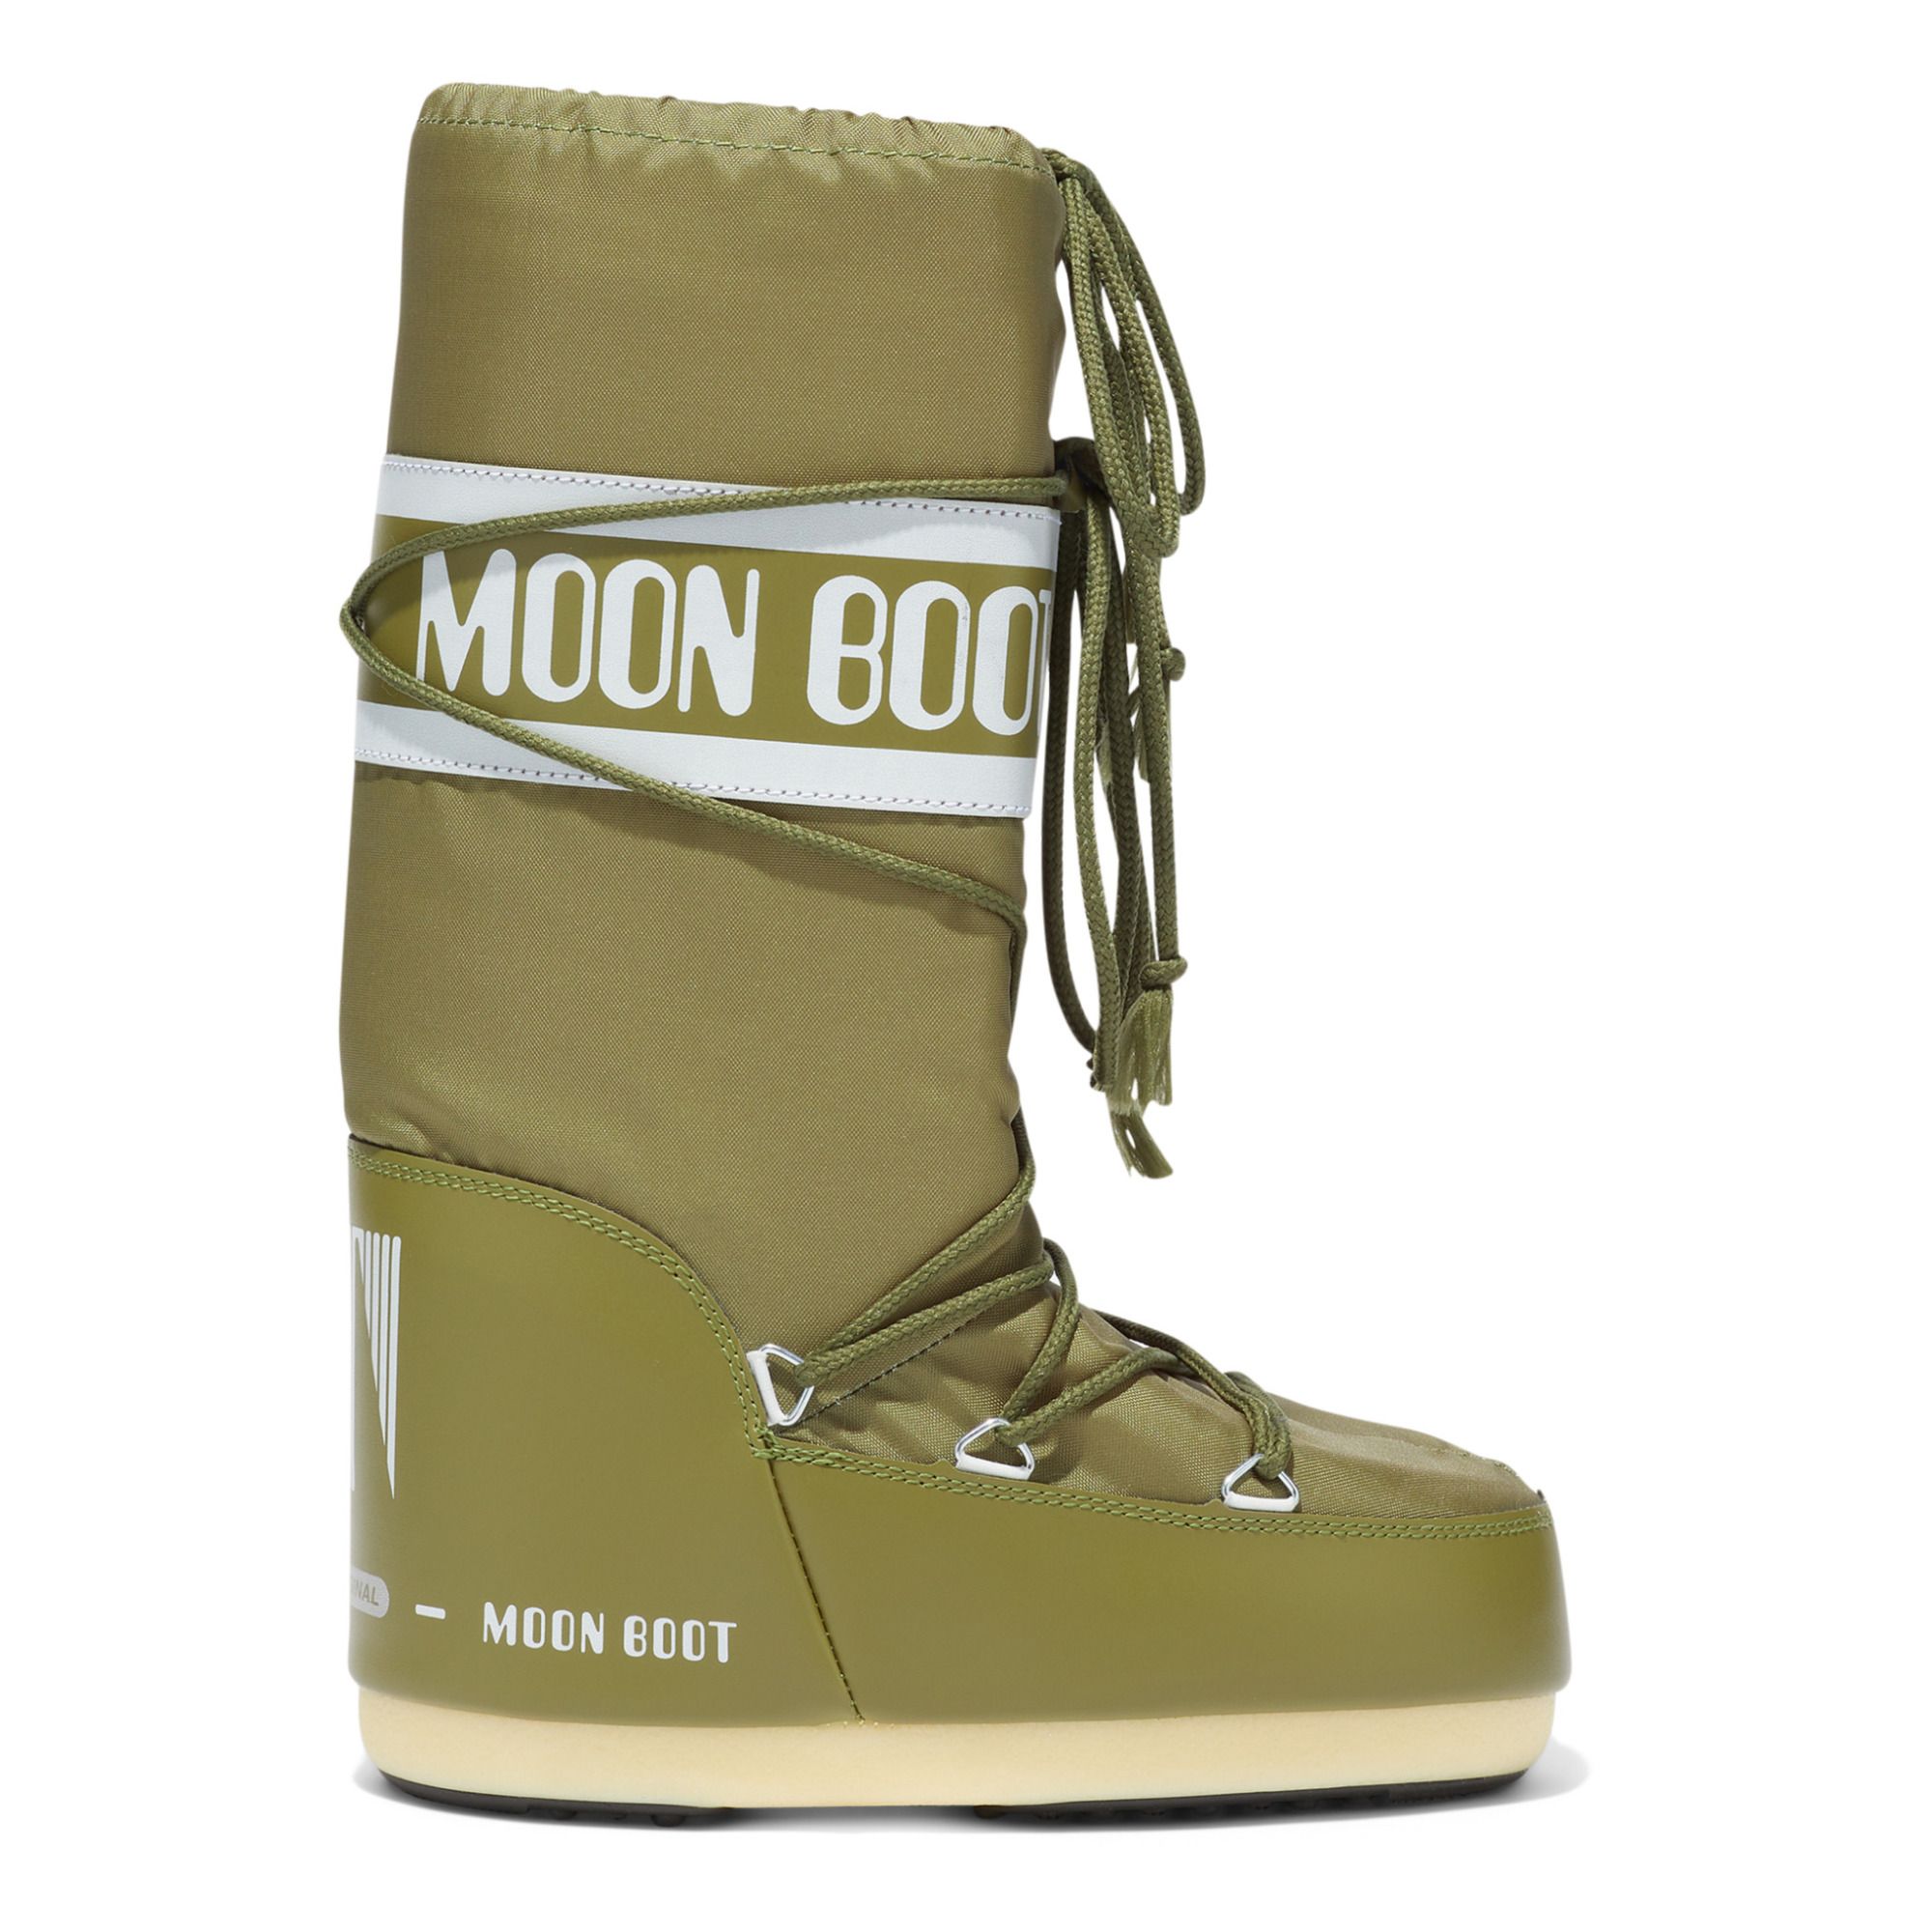 Moon Boot - Moon Boot Nylon - Femme - Vert kaki